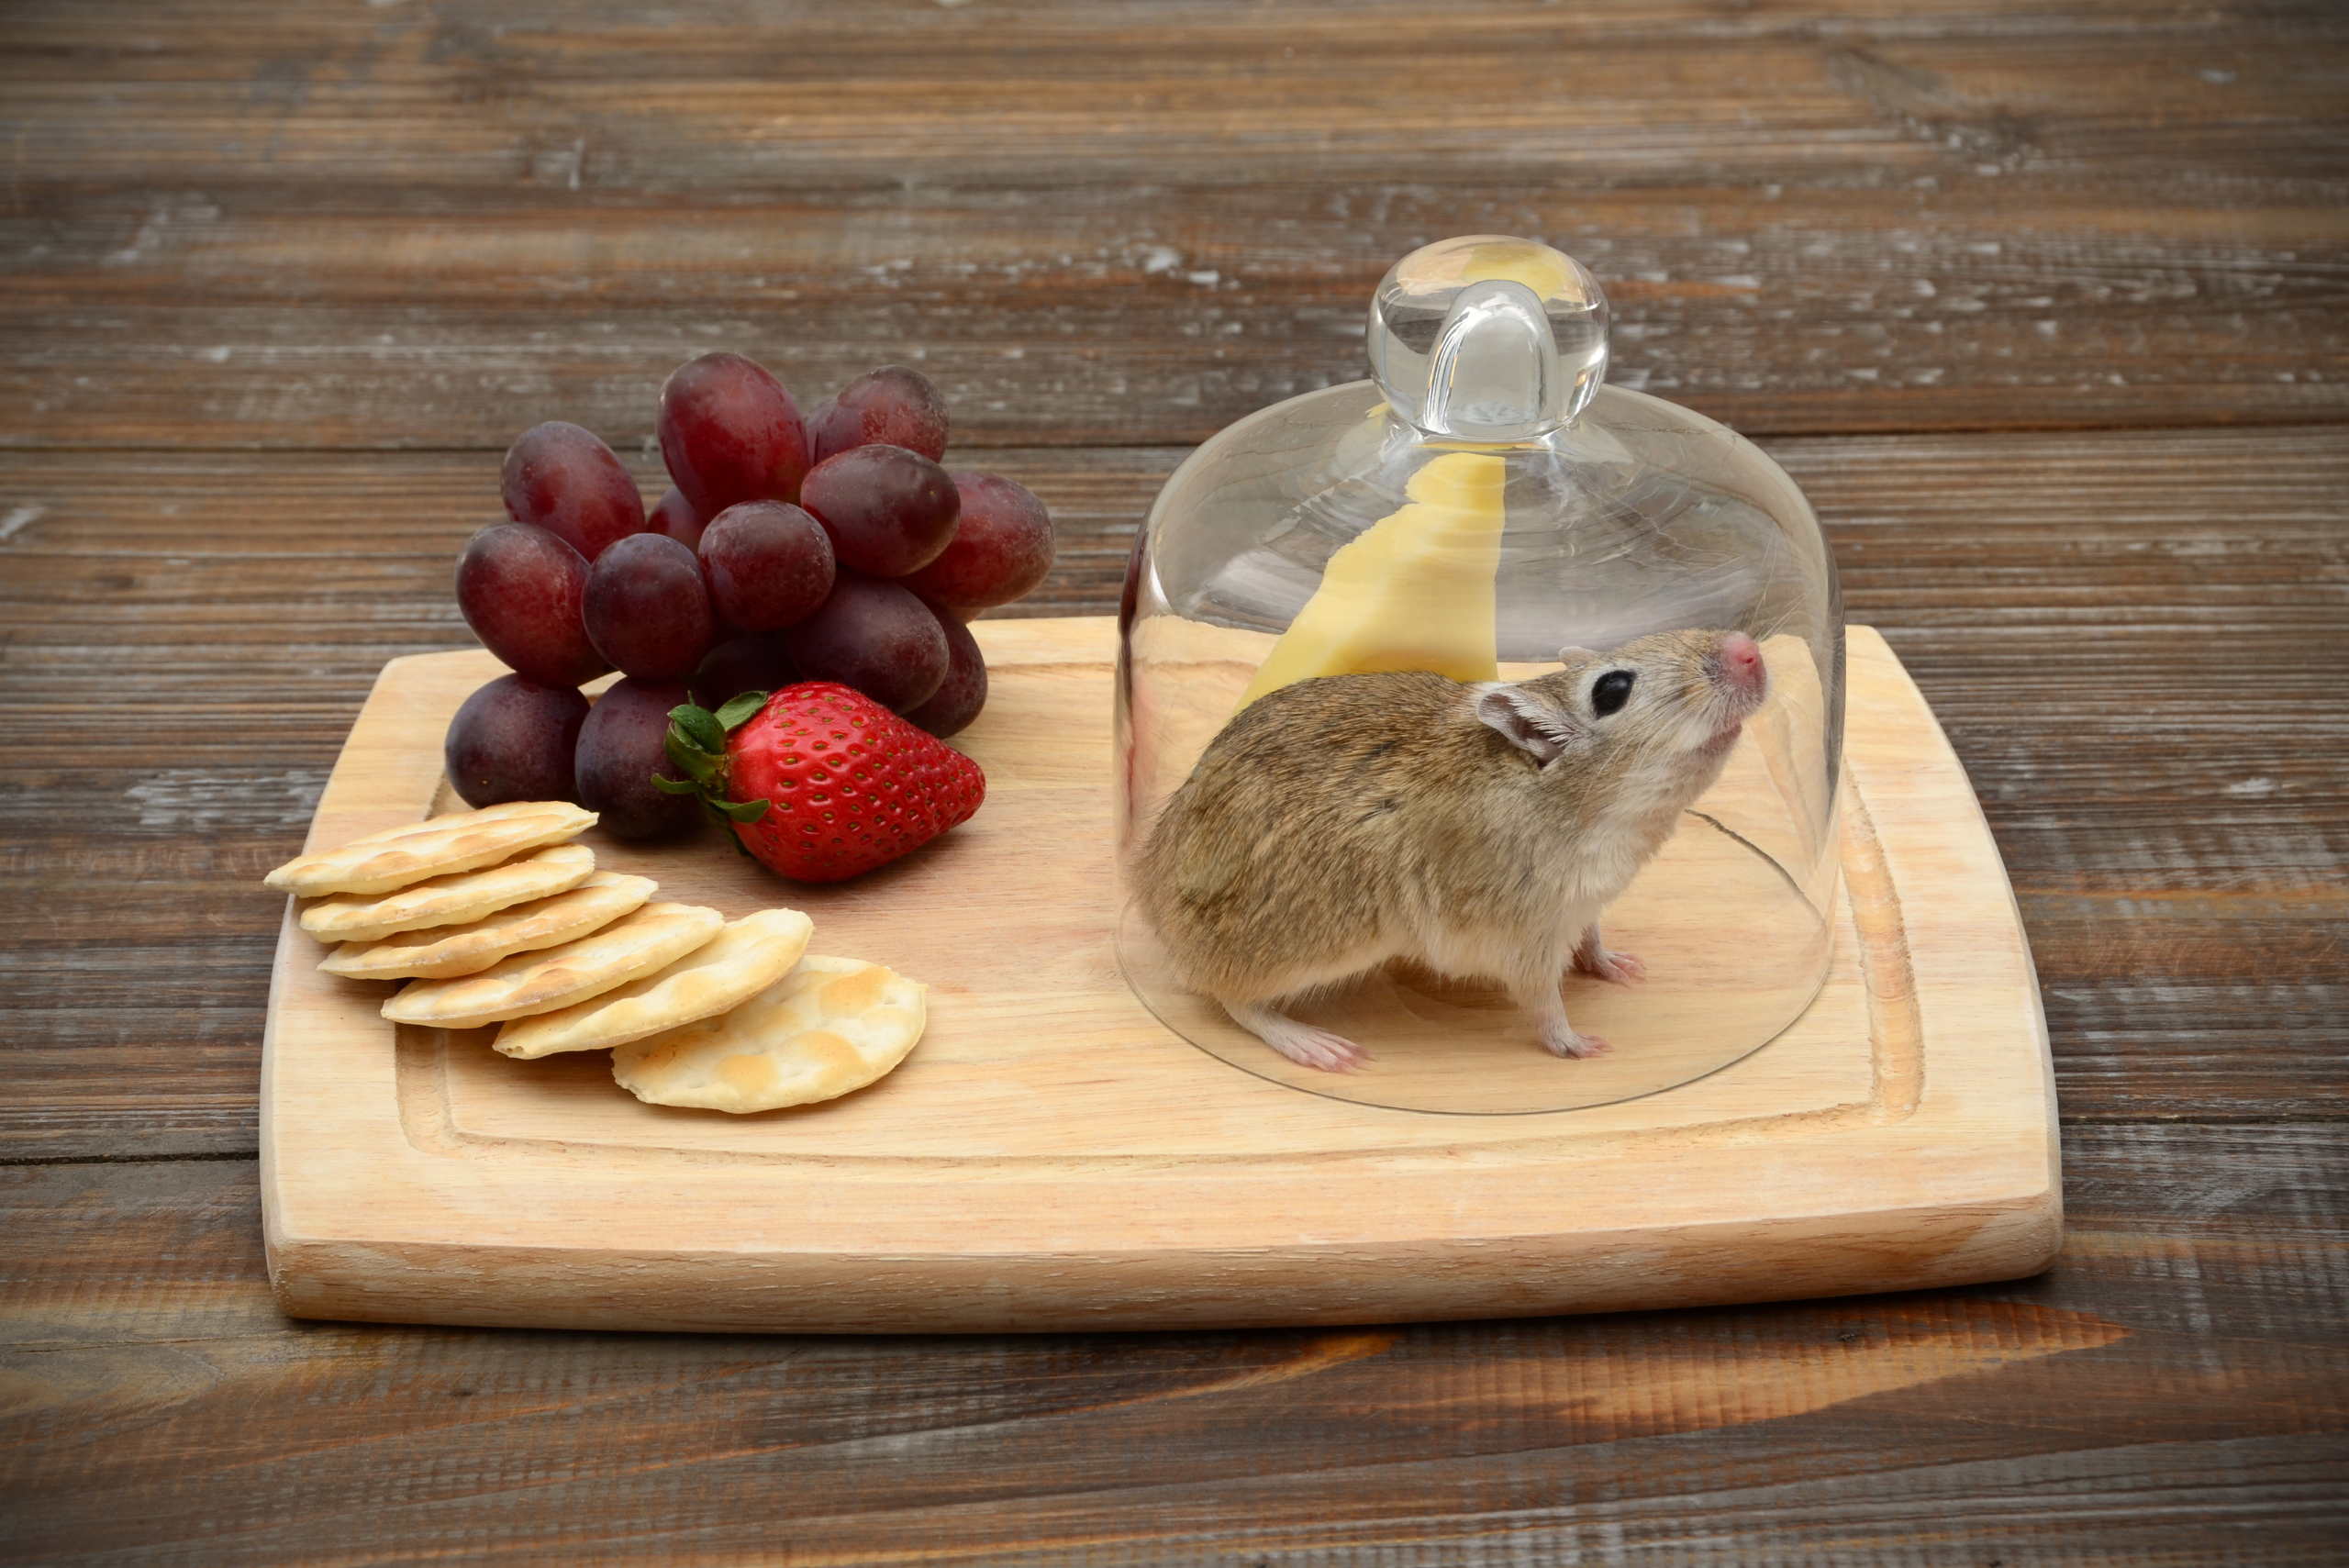 לוח גבינה עם עכבר לכוד מתחת למיכל זכוכית.